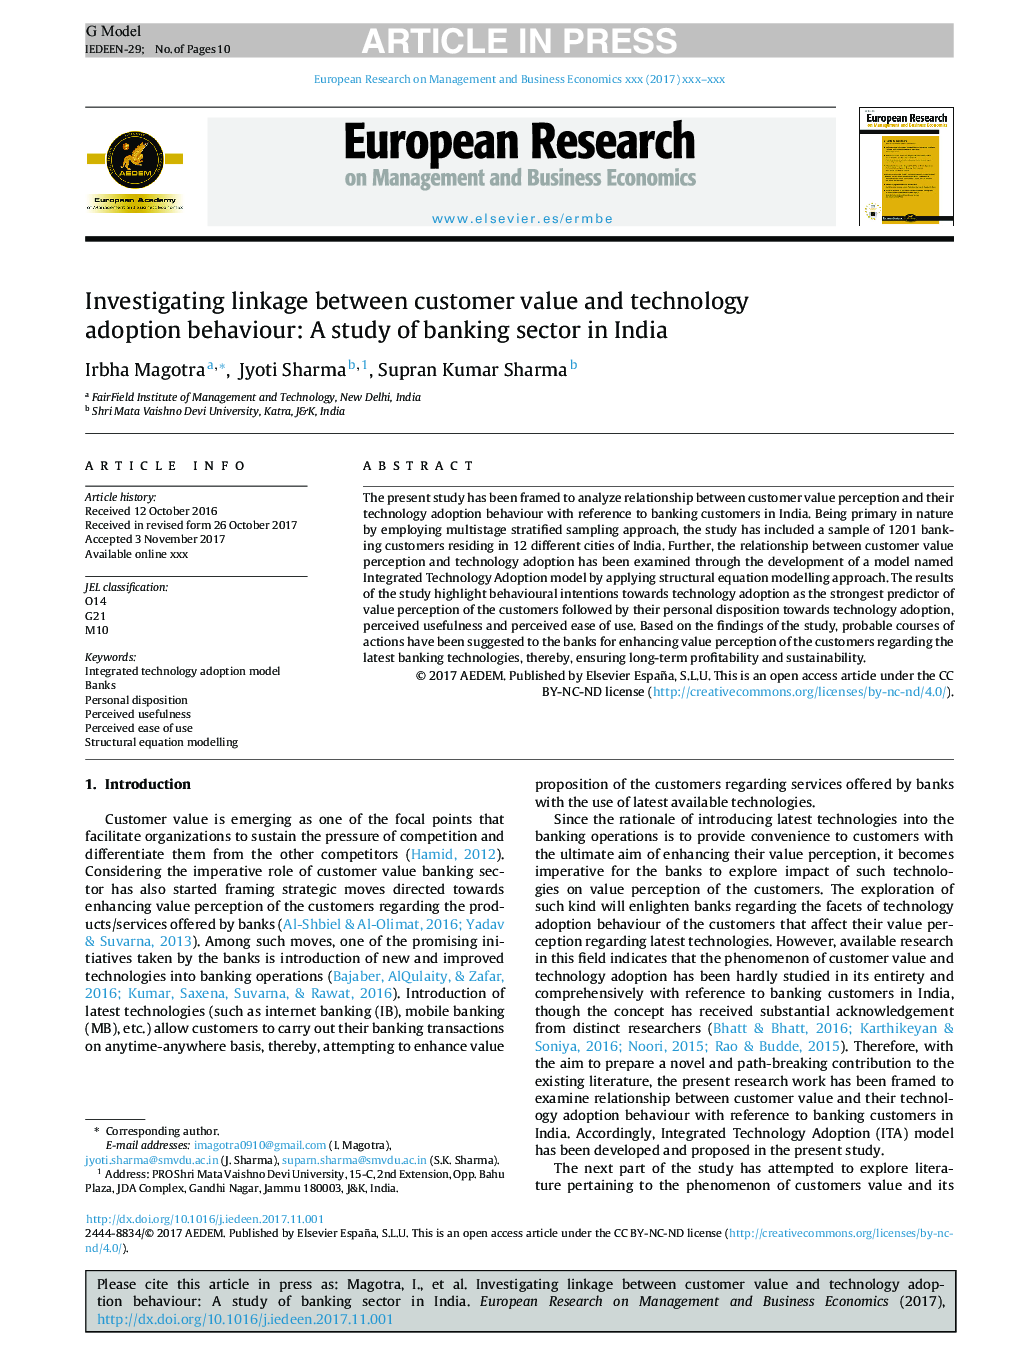 بررسی ارتباط بین ارزش مشتری و رفتار پذیرش فناوری: مطالعه در مورد بخش بانکی در هند 